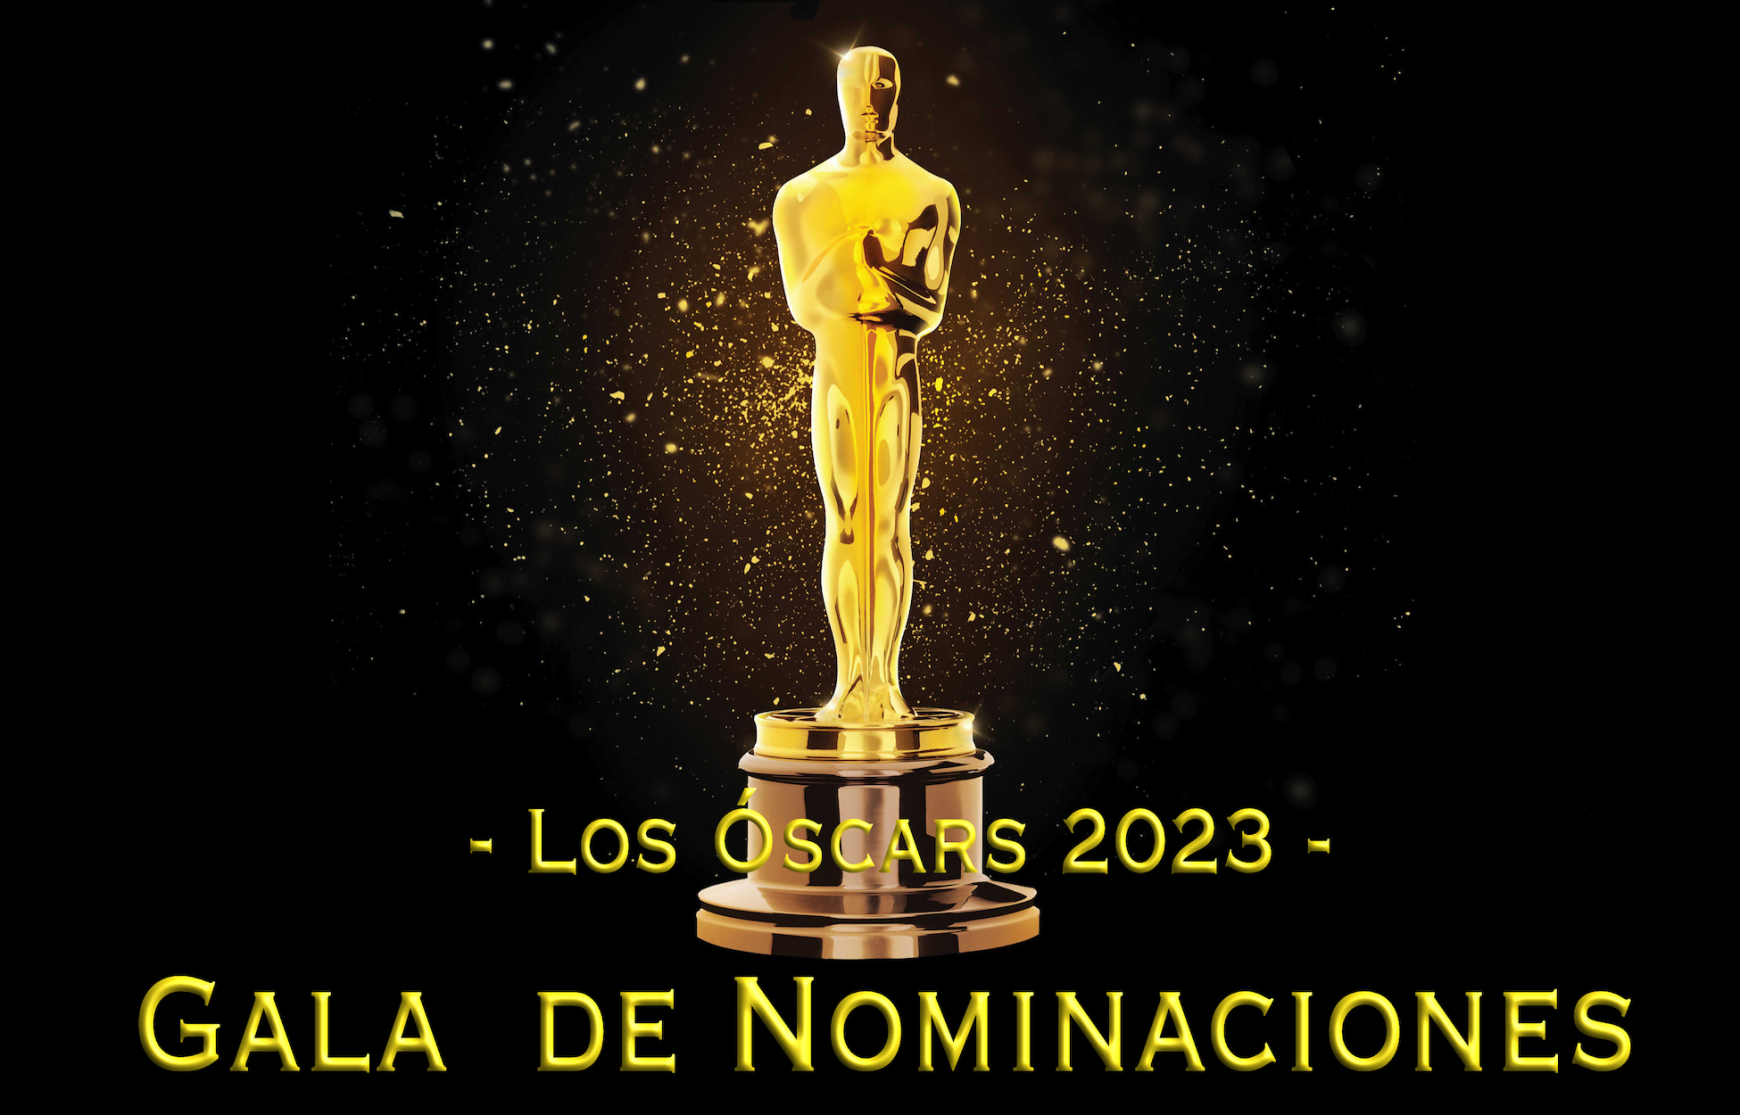 Gala de Nominaciones oficiales de los Óscar 2023: cuándo es y cómo verla en España, América Latina y otros países